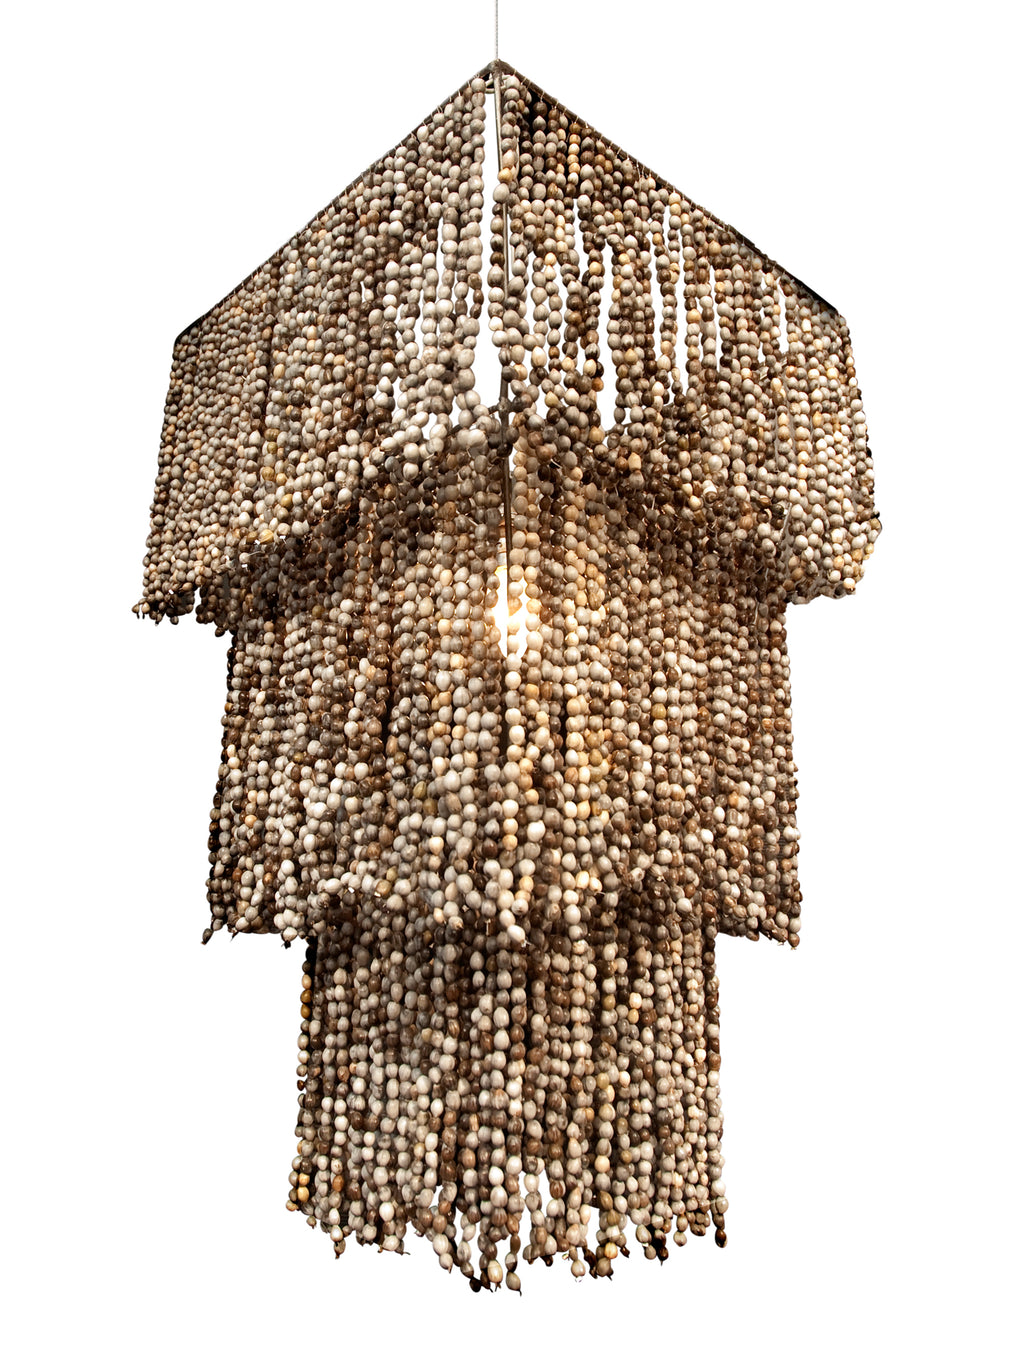 3 tier chandelier. zulu seeds. african lighting